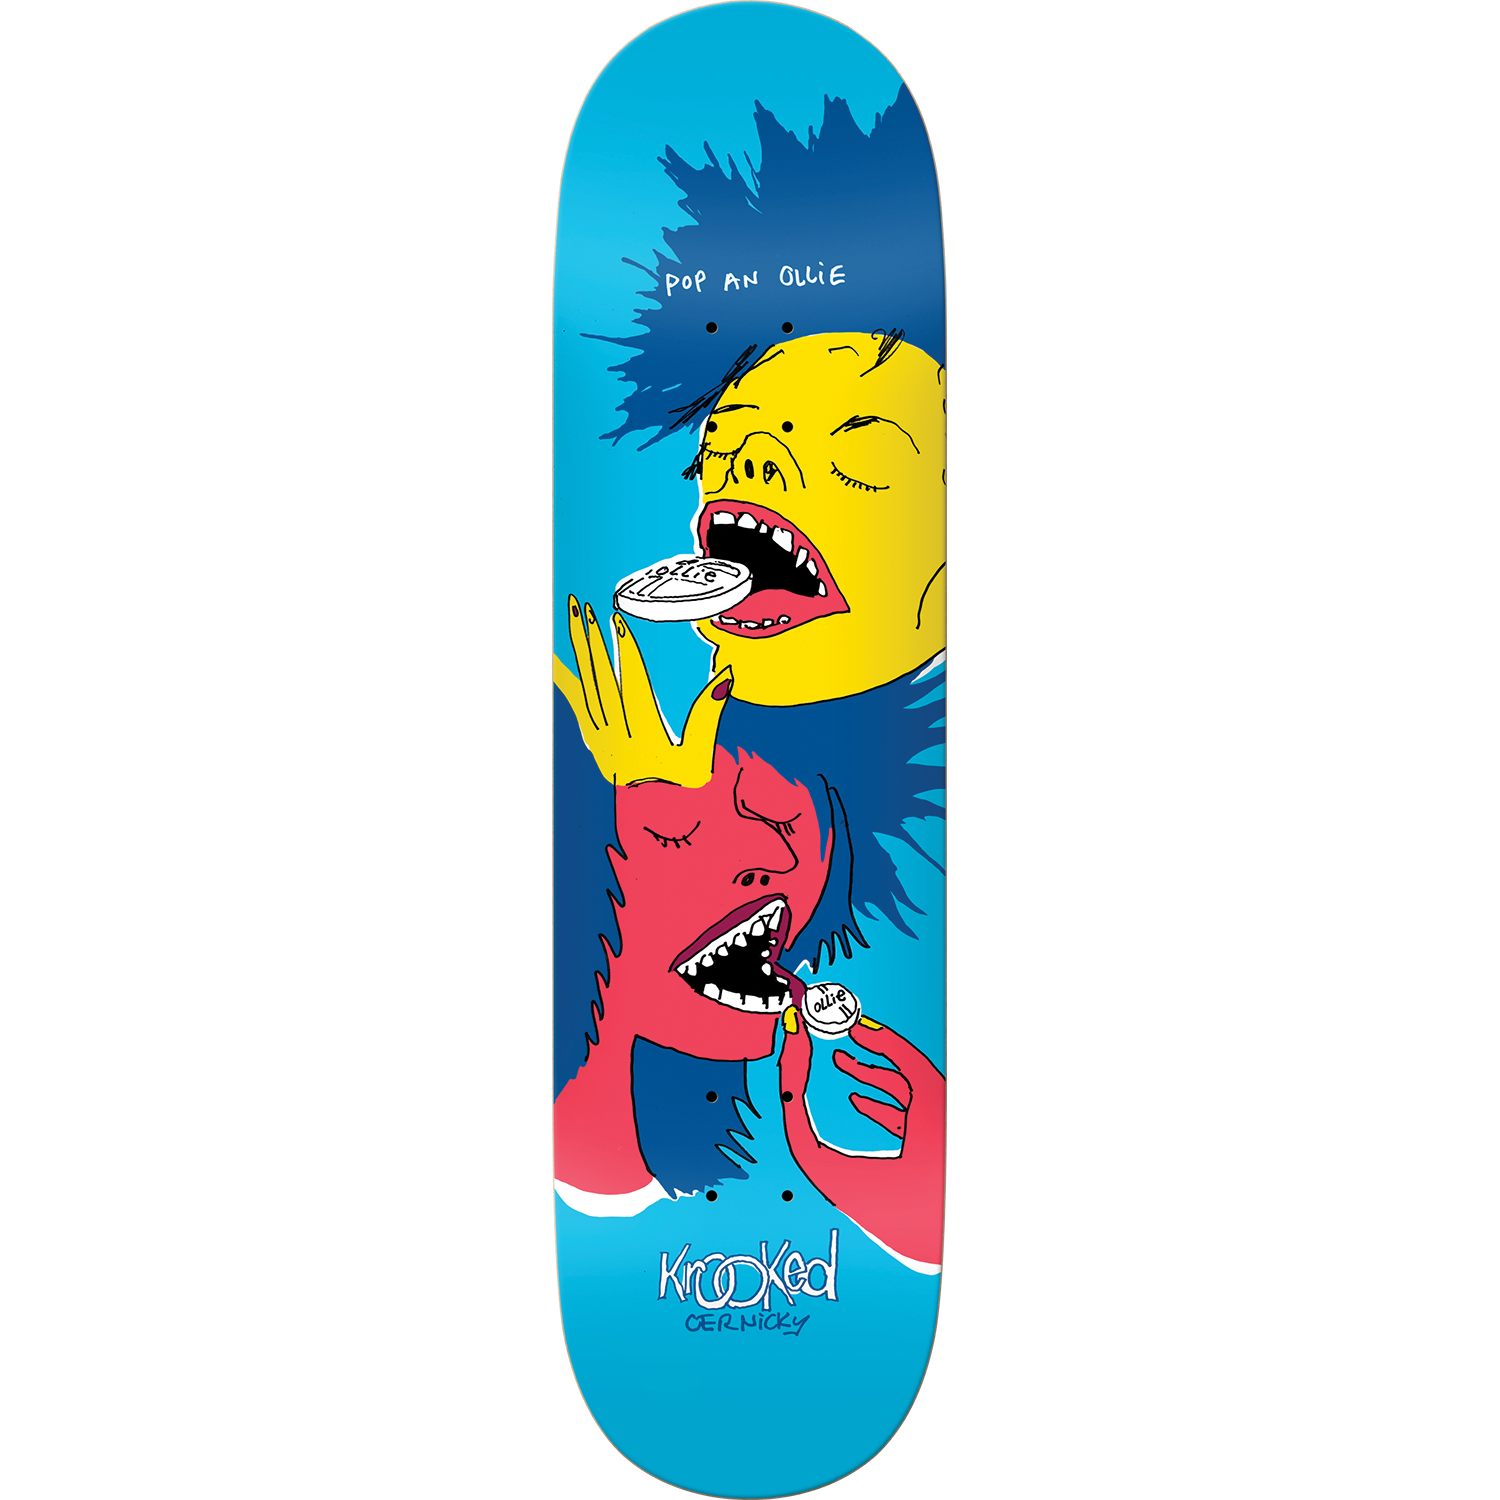 Krooked Cernicky Popped Skateboard Deck -8.38 DECK ONLY